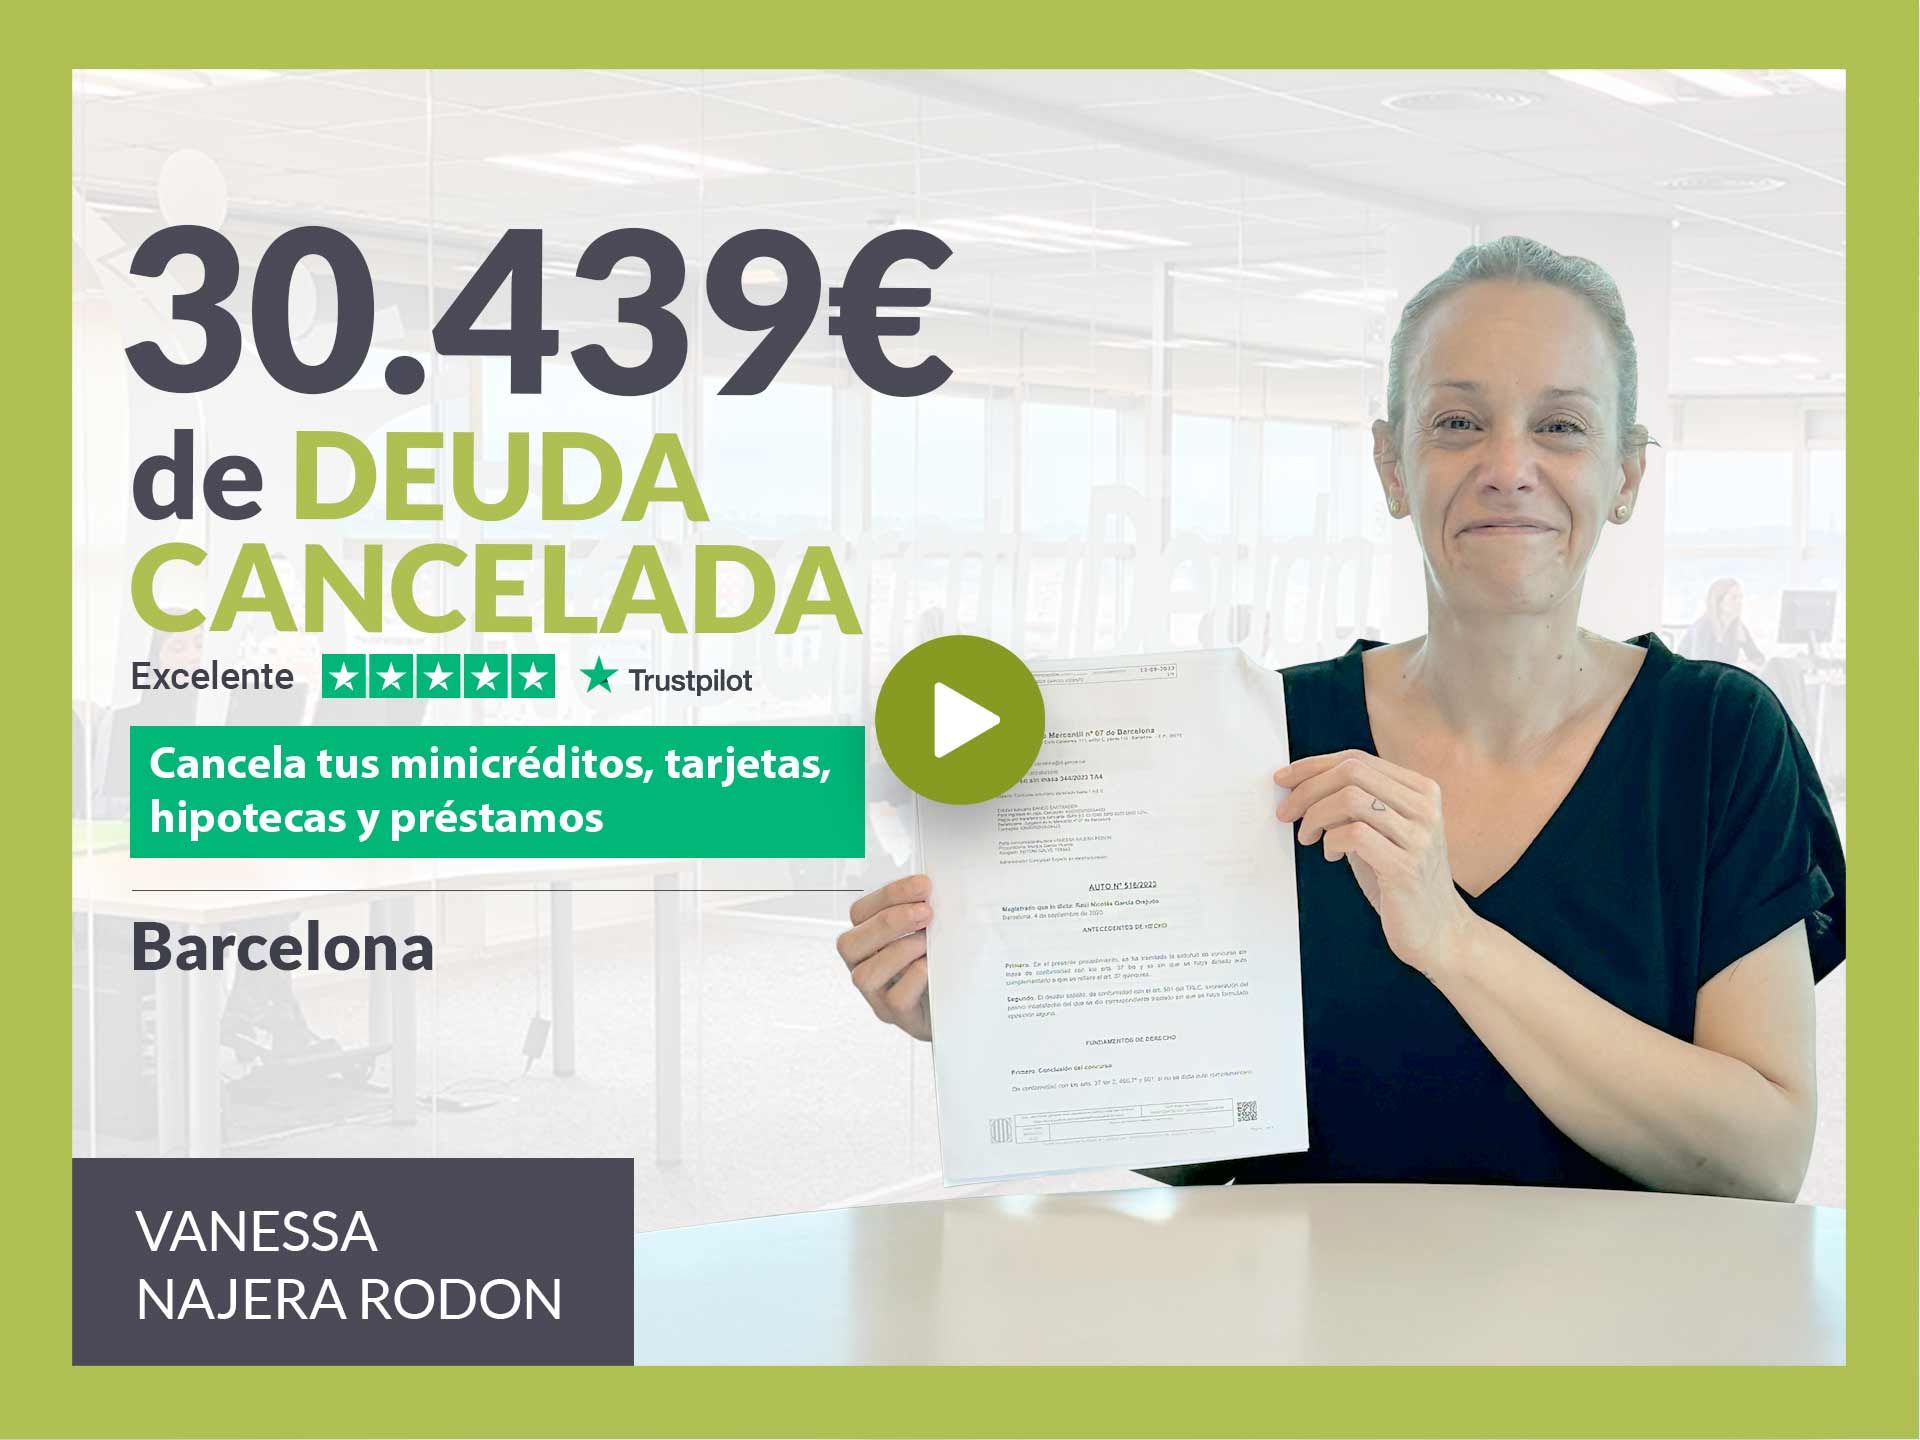 Repara tu Deuda Abogados cancela 30.439? en Barcelona (Catalunya) con la Ley de Segunda Oportunidad